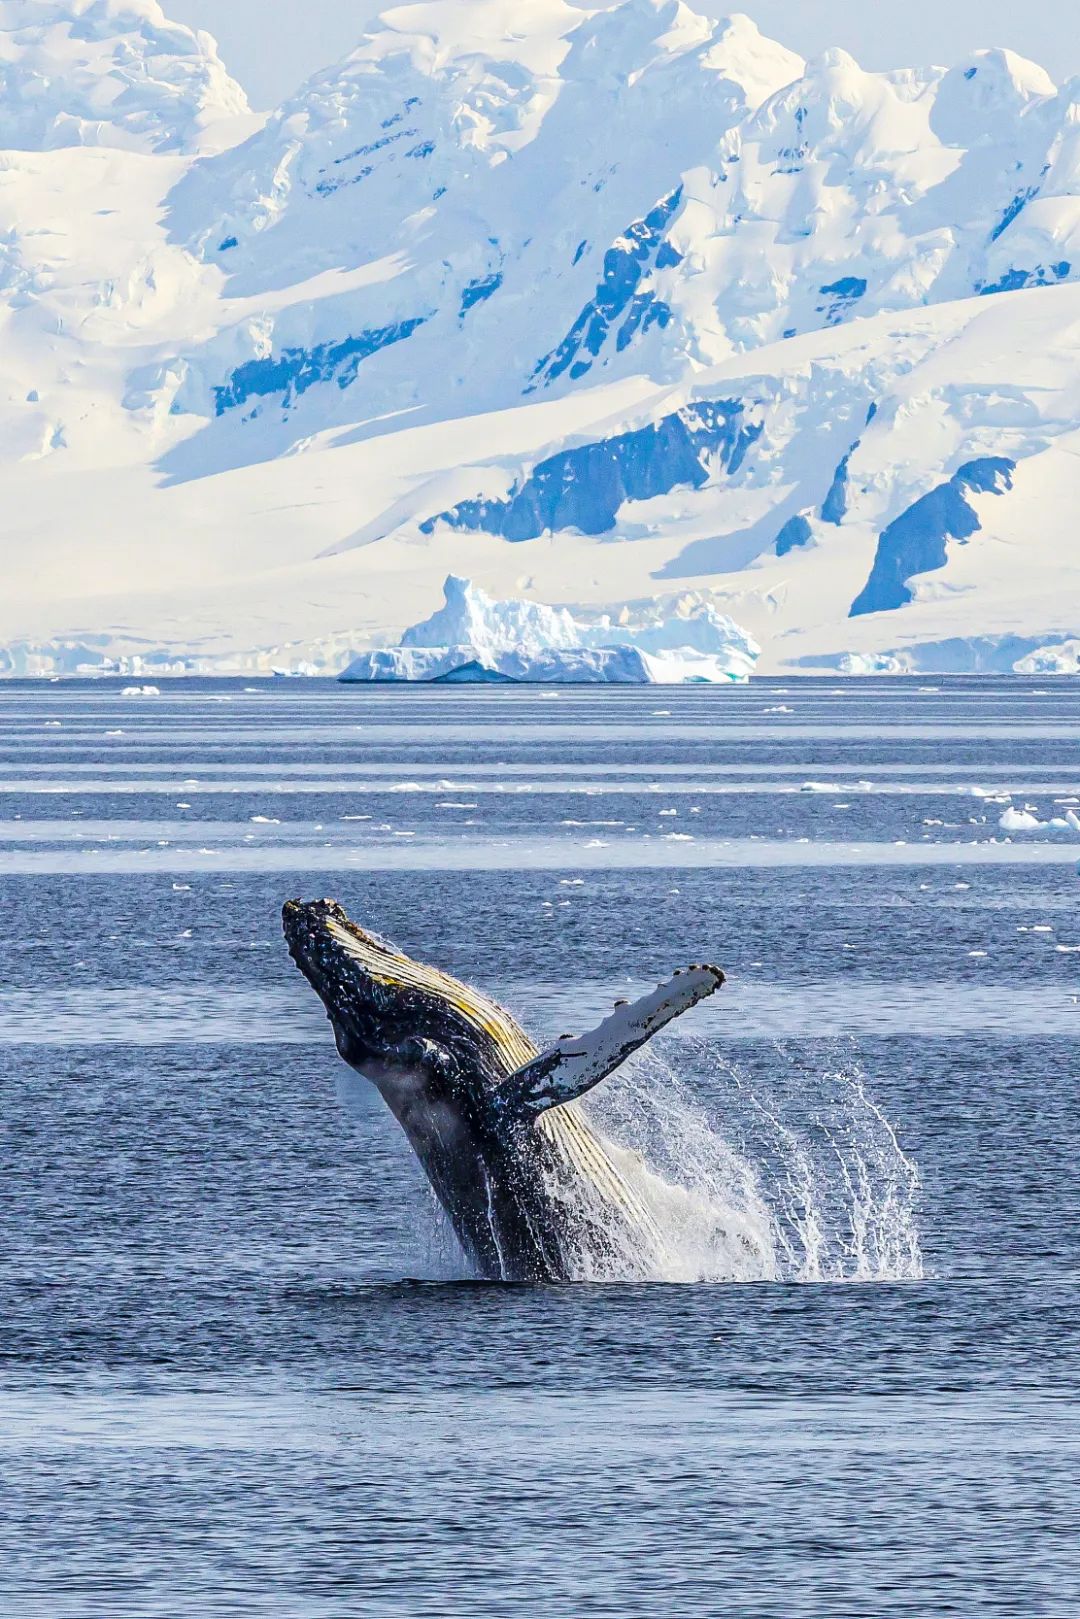 ▼(南极杰拉许海峡水域,一头成年大翅鲸高高跃出水面,来源@视觉中国)